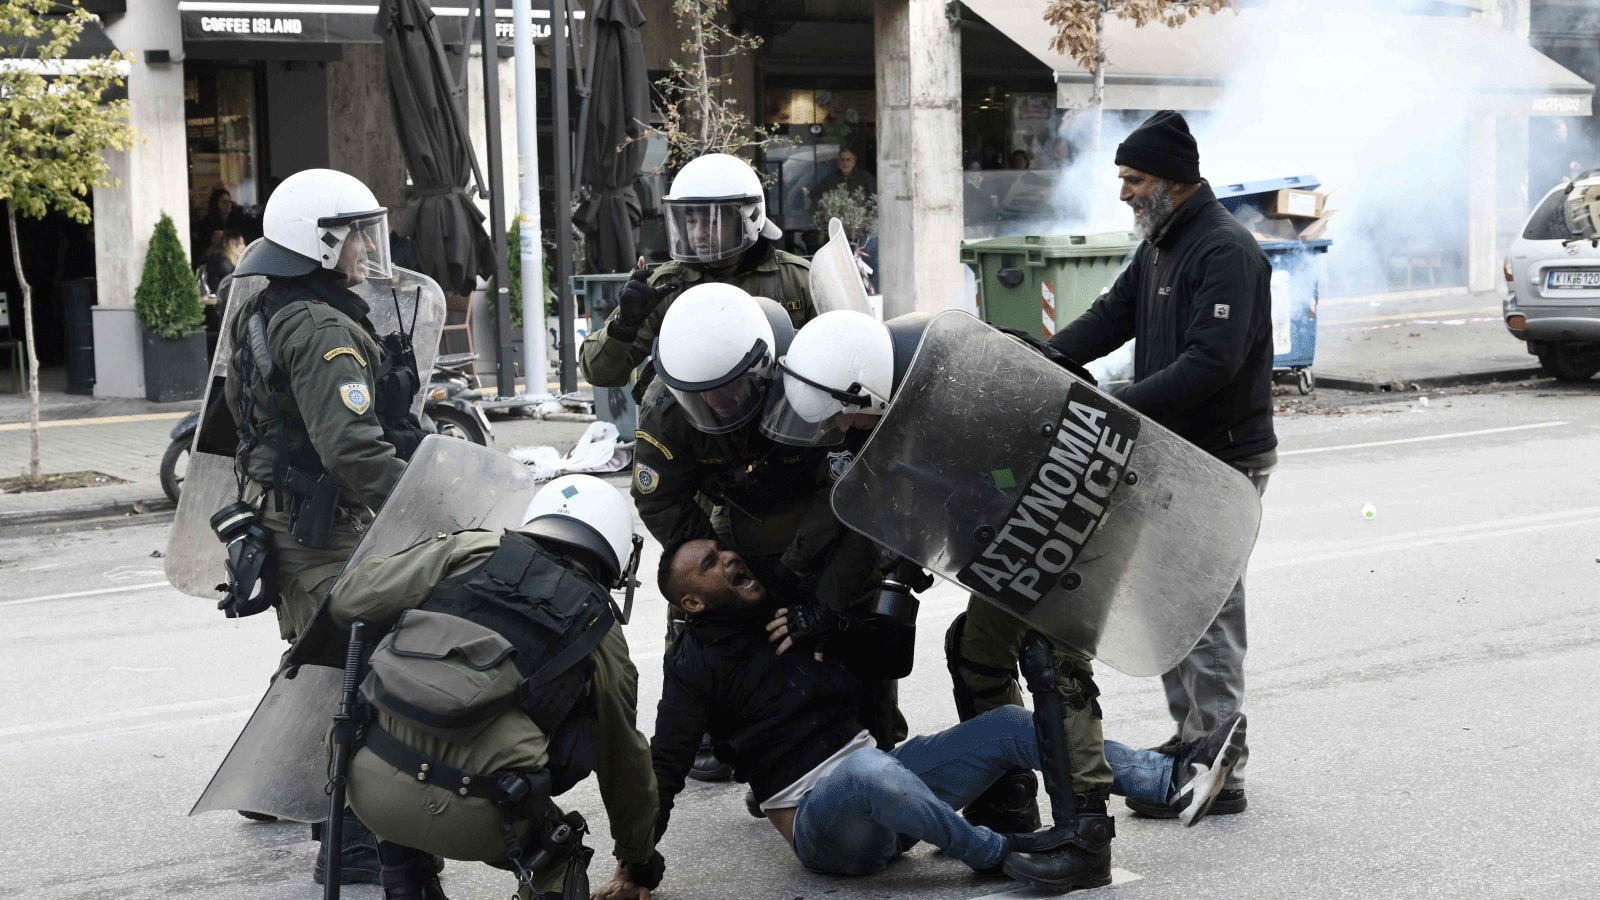 شرطة مكافحة الشغب تعتقل متظاهرا بعد اشتباكات بين أفراد من طائفة الروما في سالونيك، اليونان. 5 كانون الأول\ديسمبر 2022